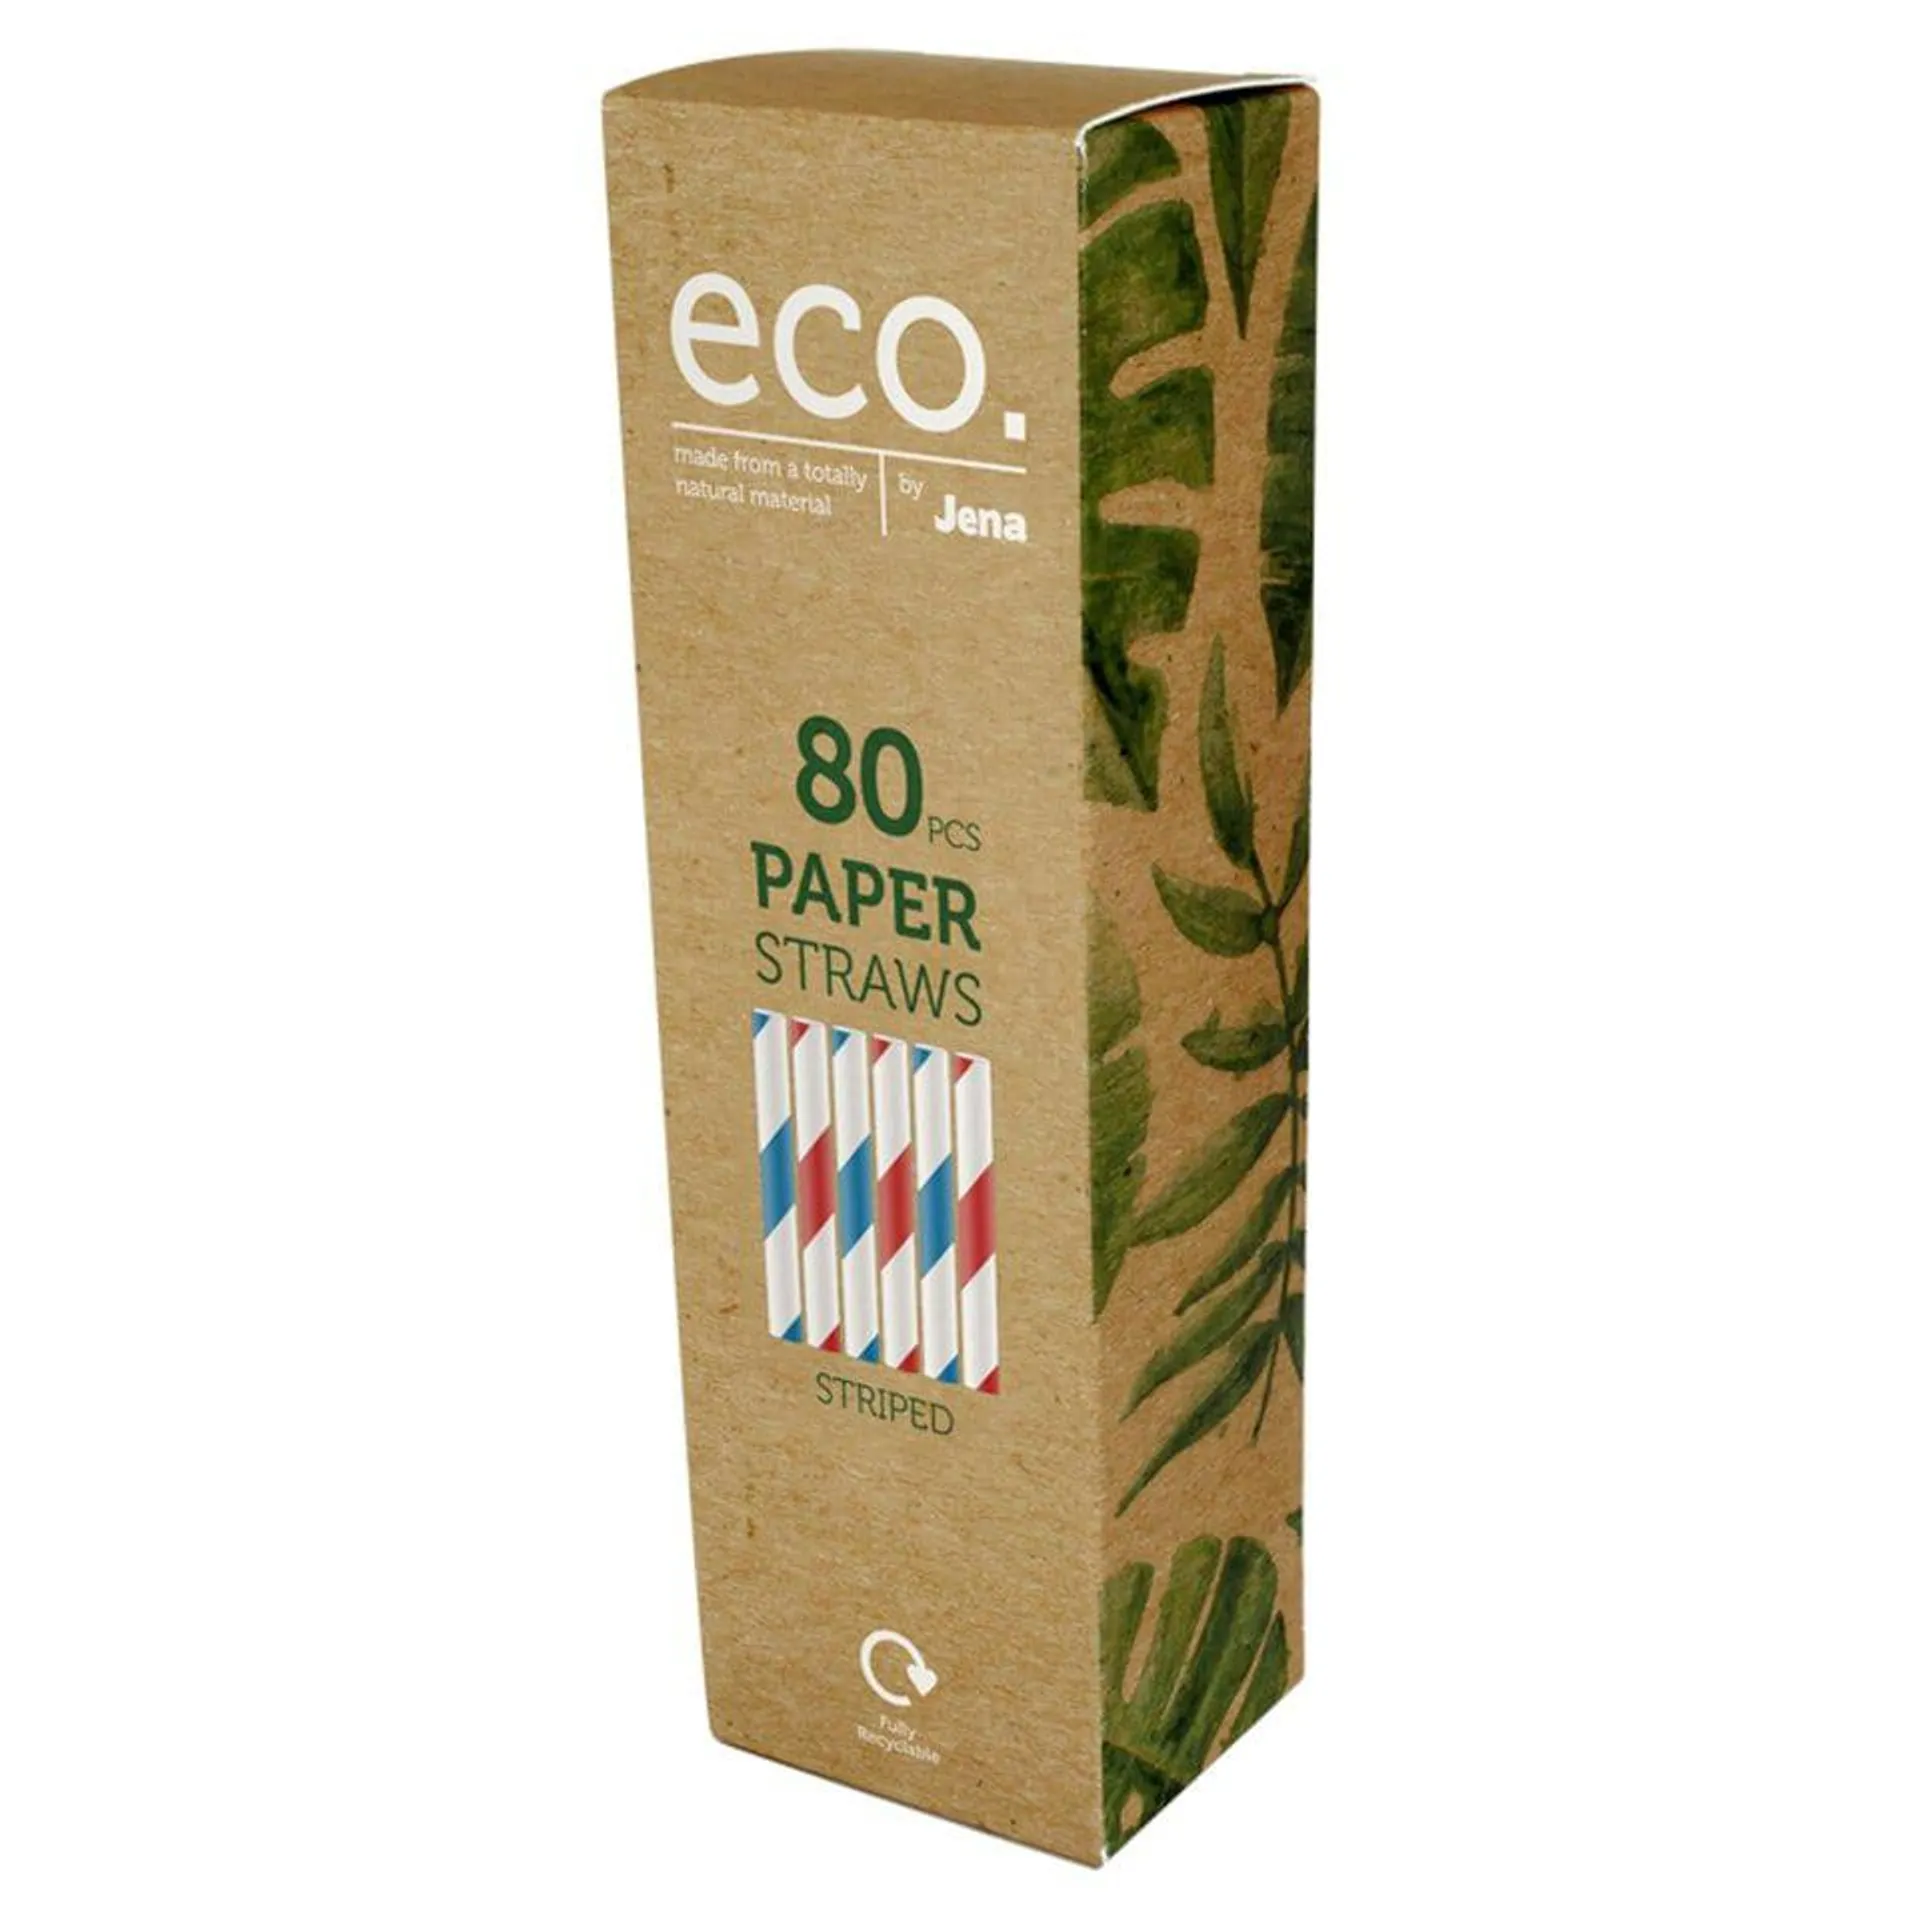 Eco 80 Paper Straws Striped